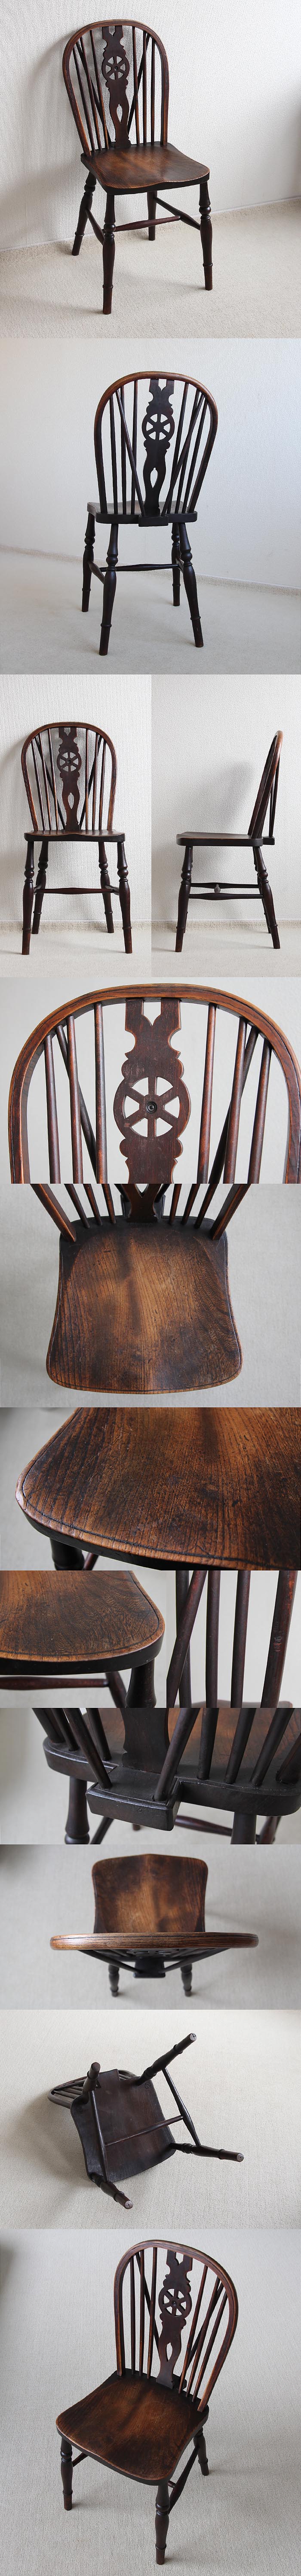 イギリス アンティーク ホイールバックチェア 木製椅子 ダイニングチェア 家具「一枚板座面」P-178